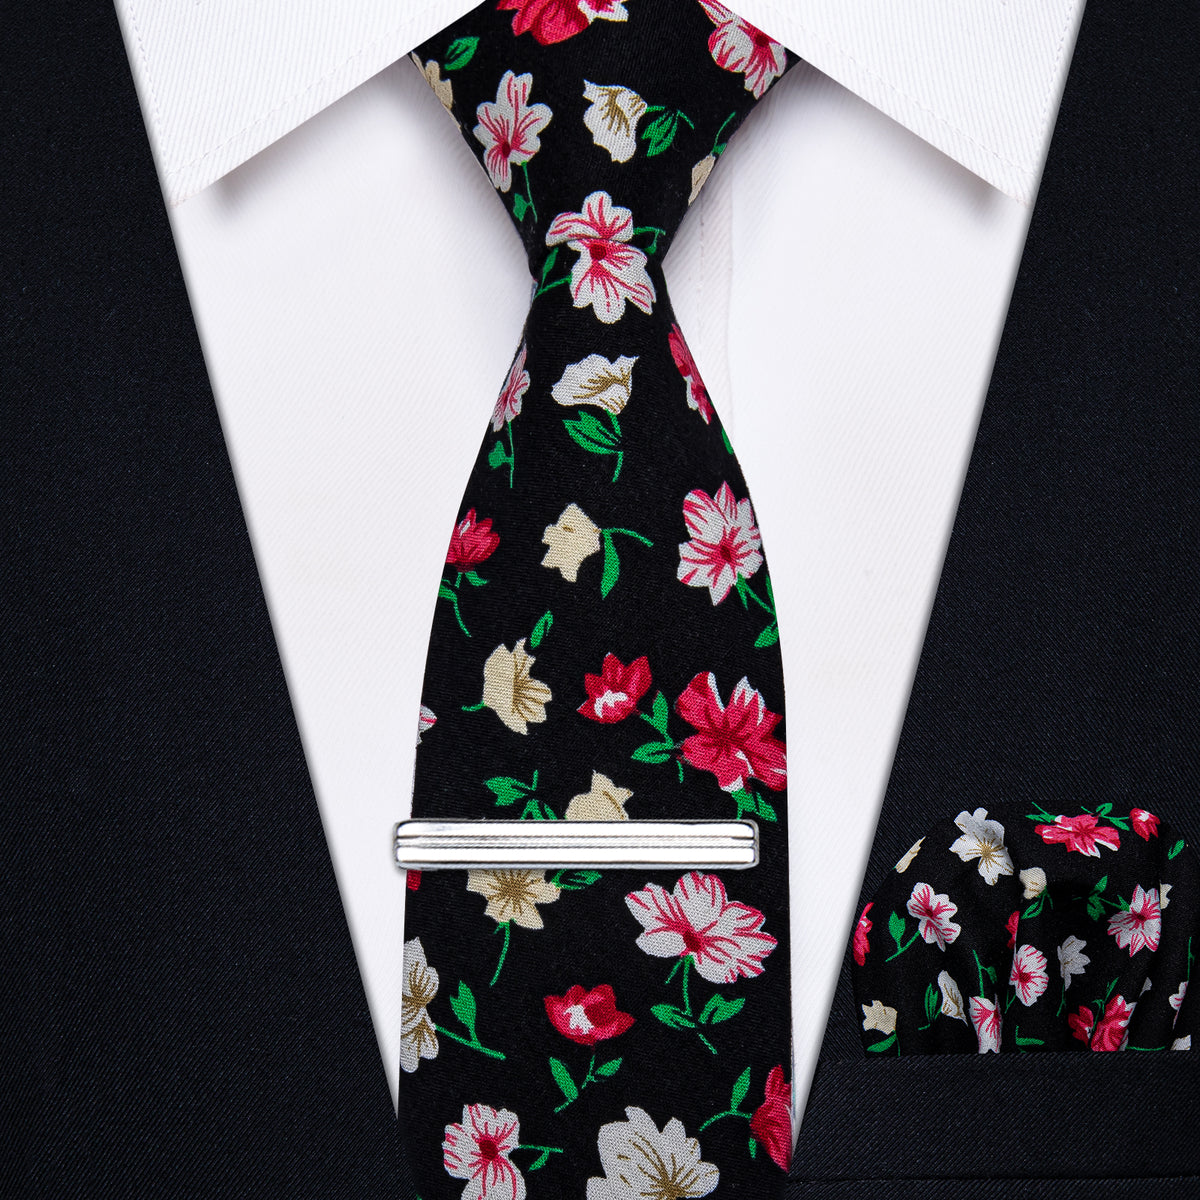 Black Red Floral Printed Skinny Tie Set with Tie Clip